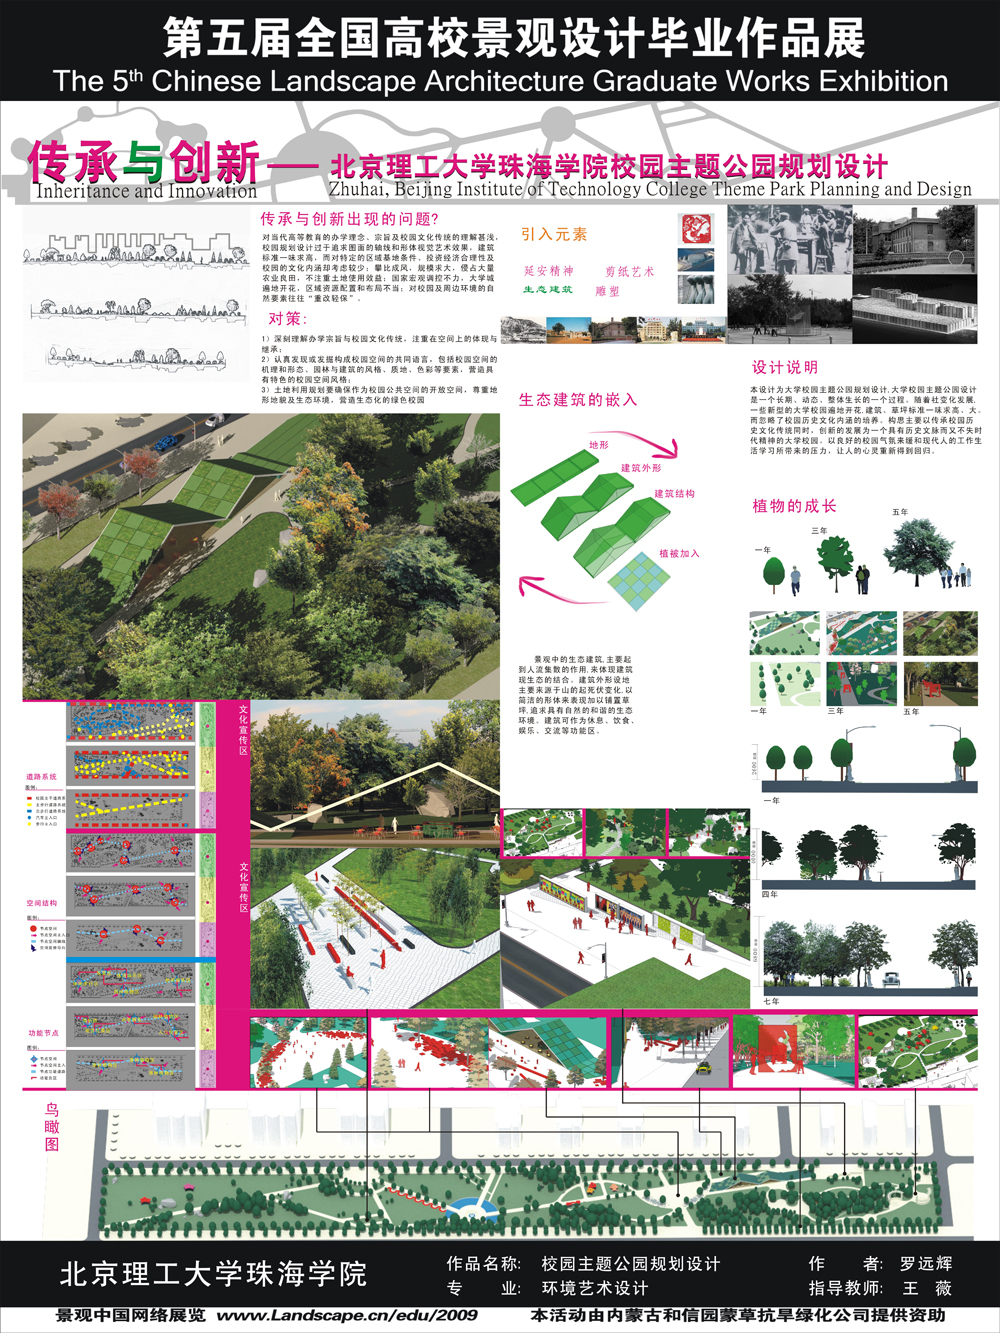 传承与创新--北京理工大学珠海学院校园主题公园规划设计-2